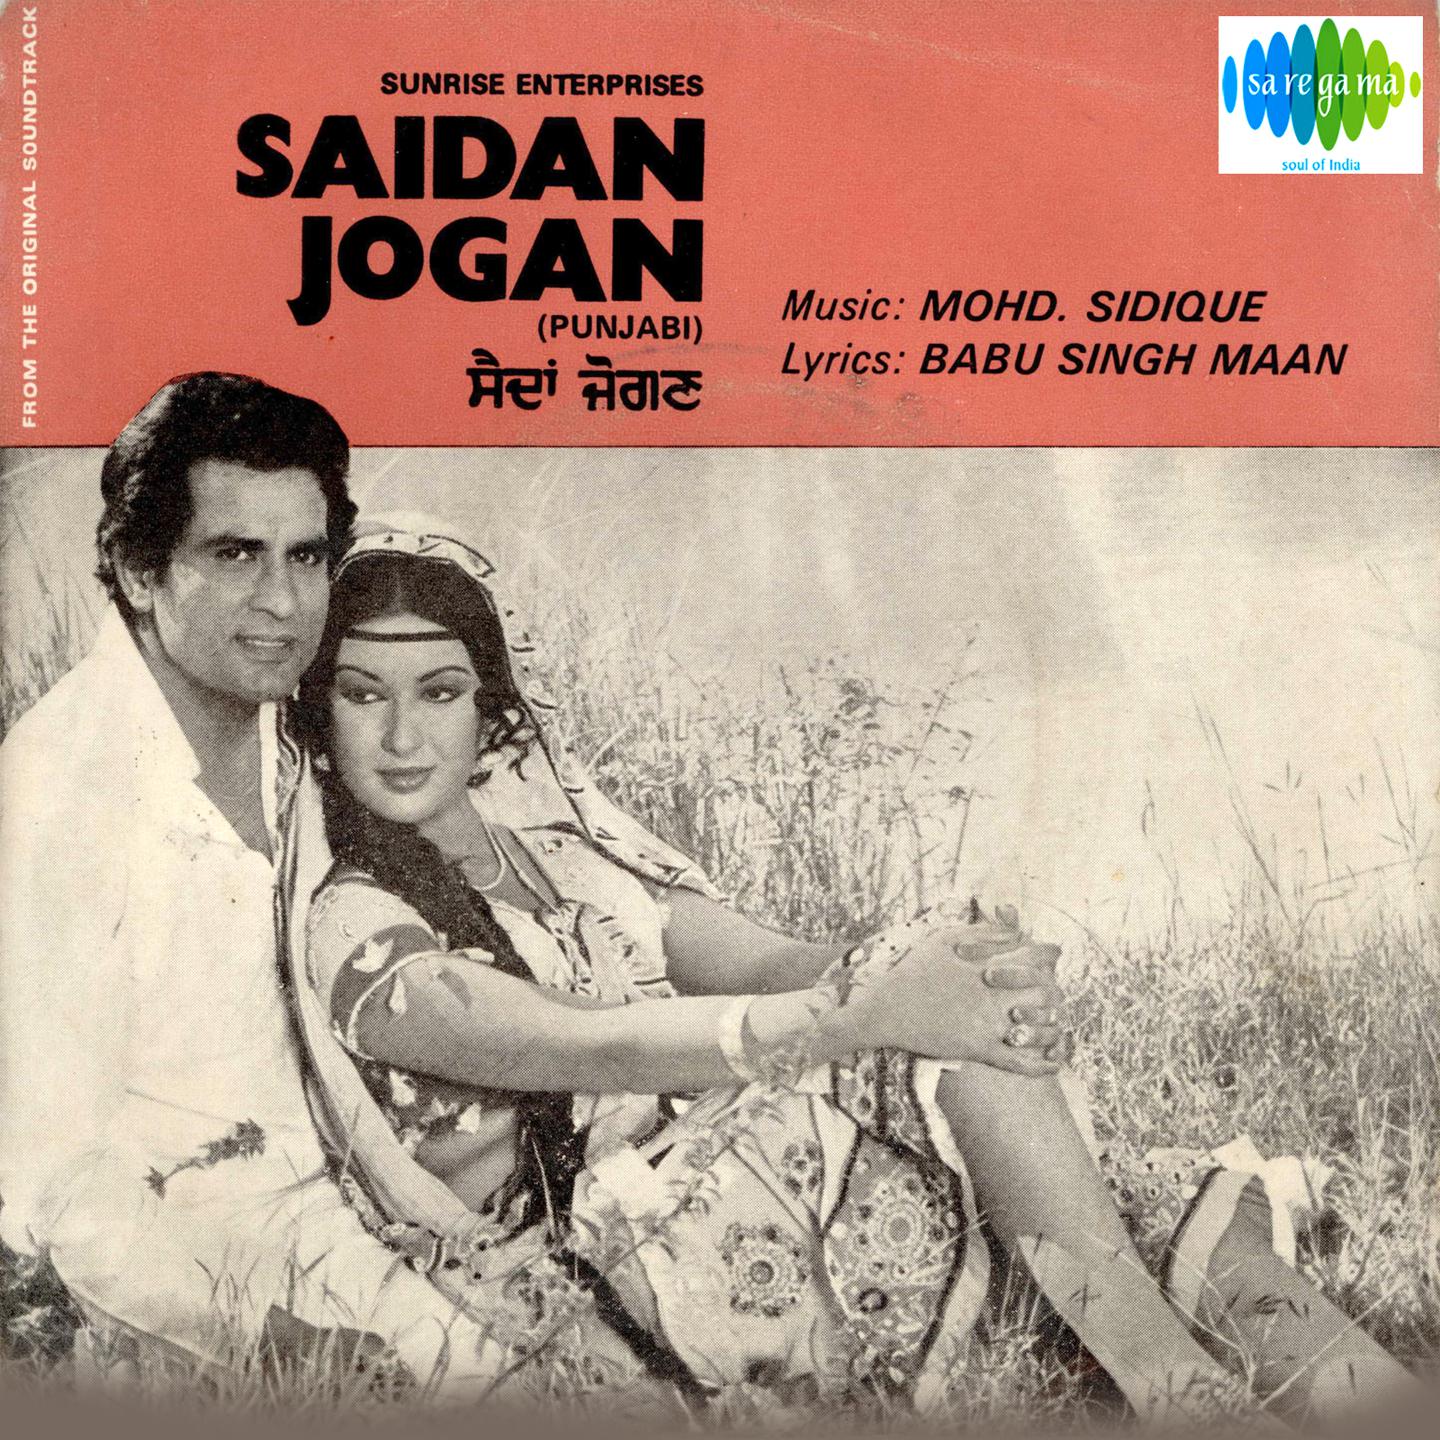 Saidan Jogan